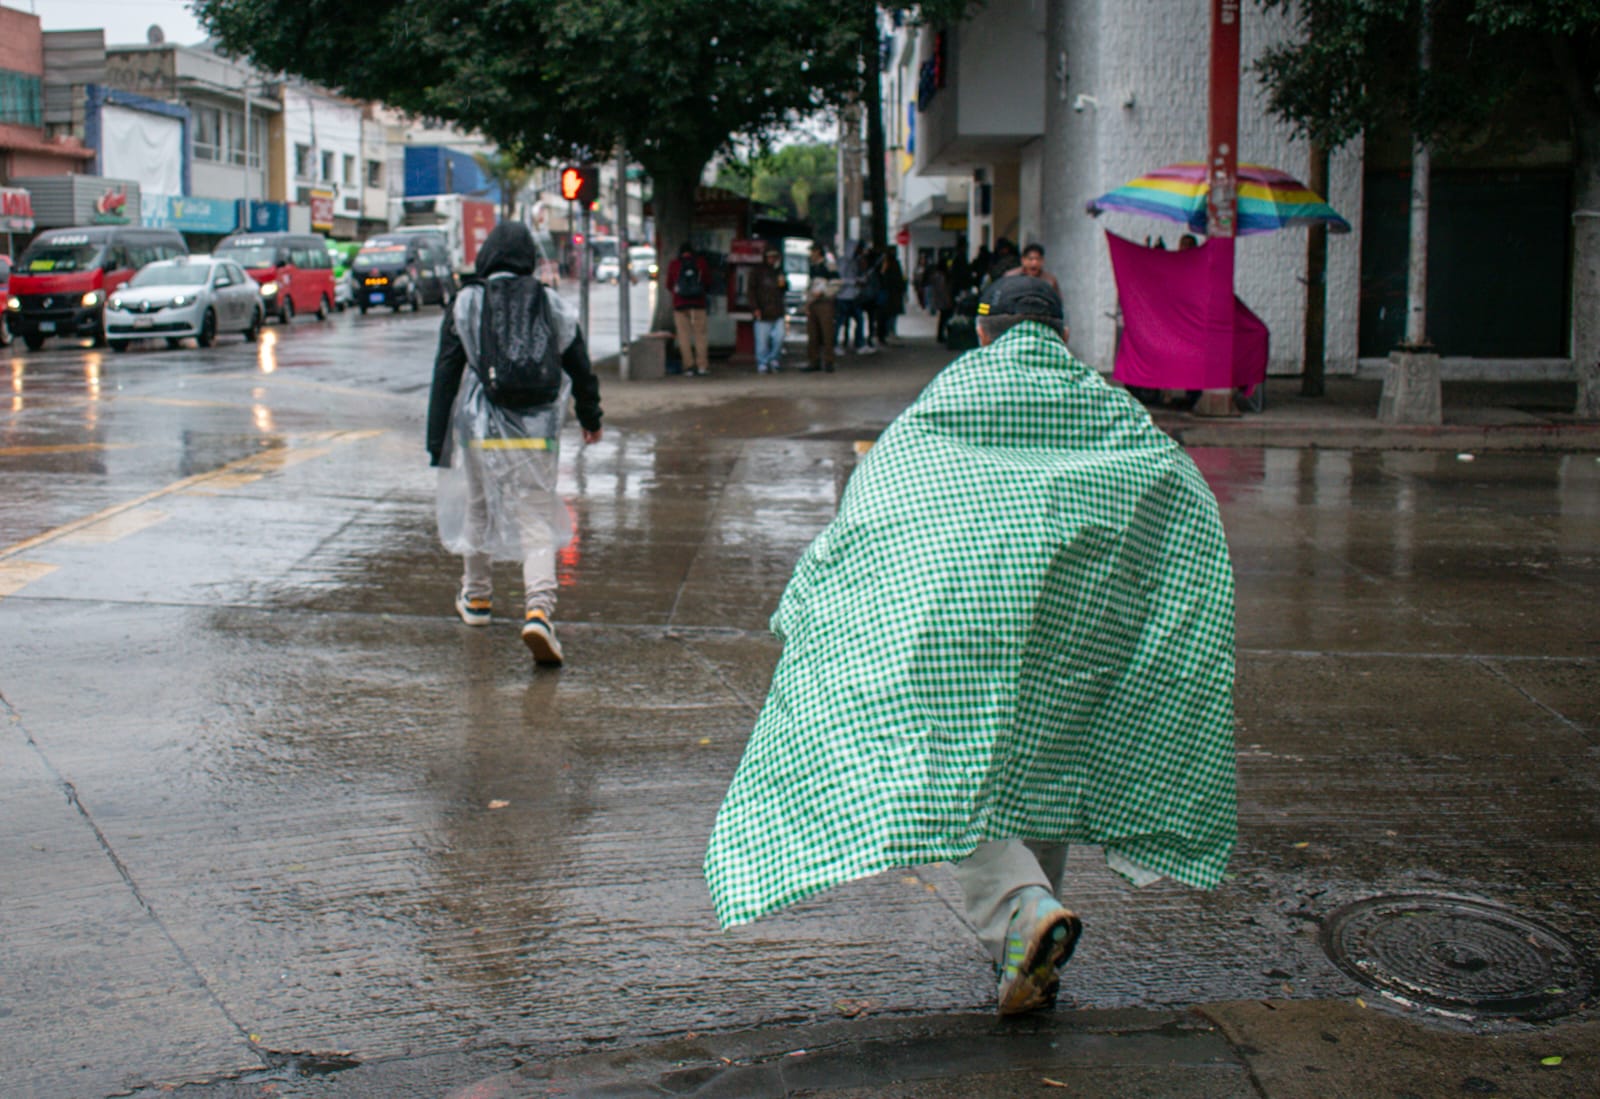 ¡La ropaaaa!: iniciarán lluvias intensas la noche de este martes: Tijuana